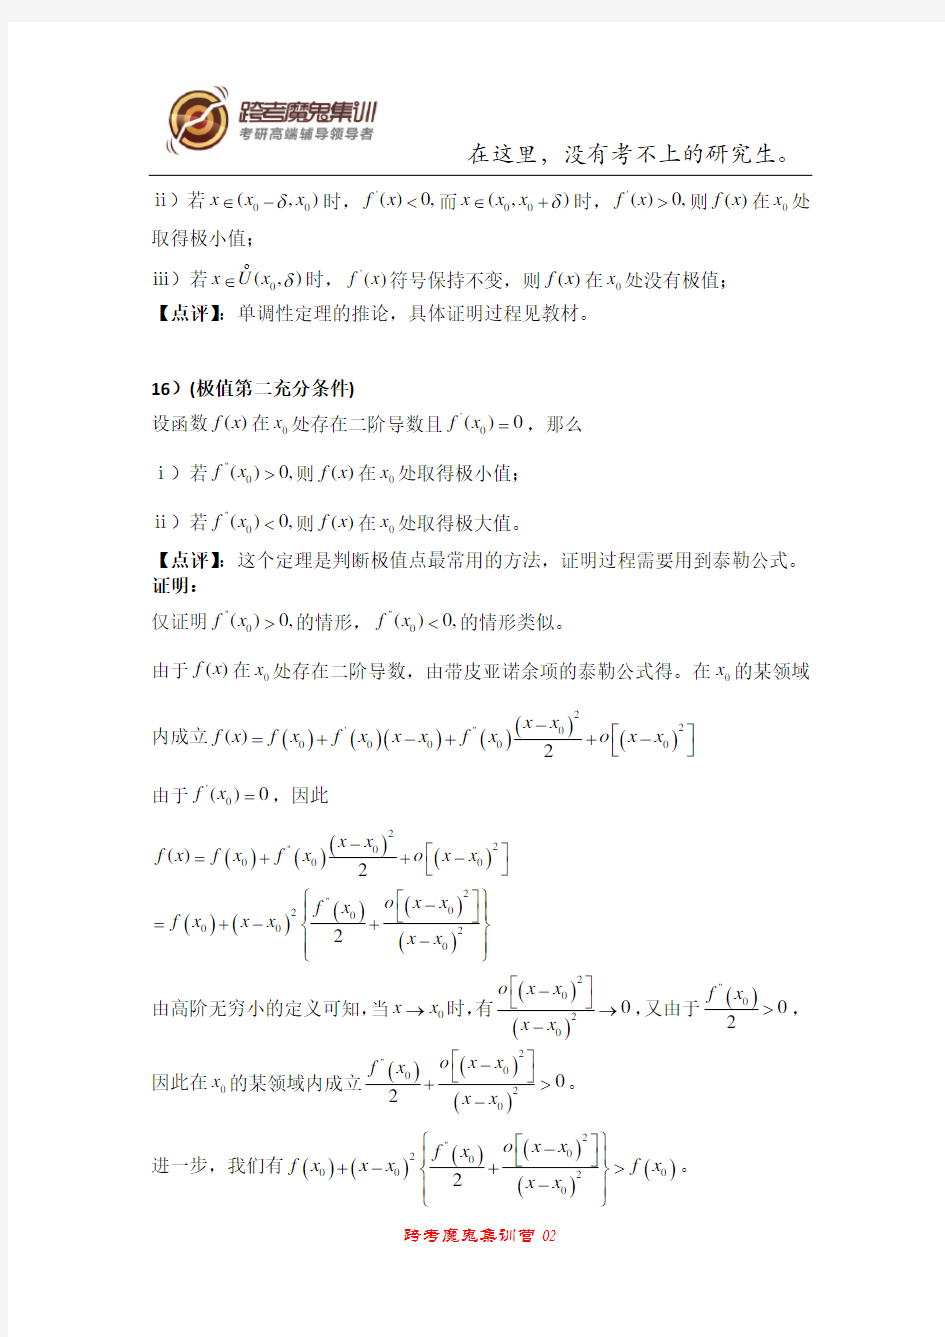 (完整版)高数中的重要定理与公式及其证明(三)